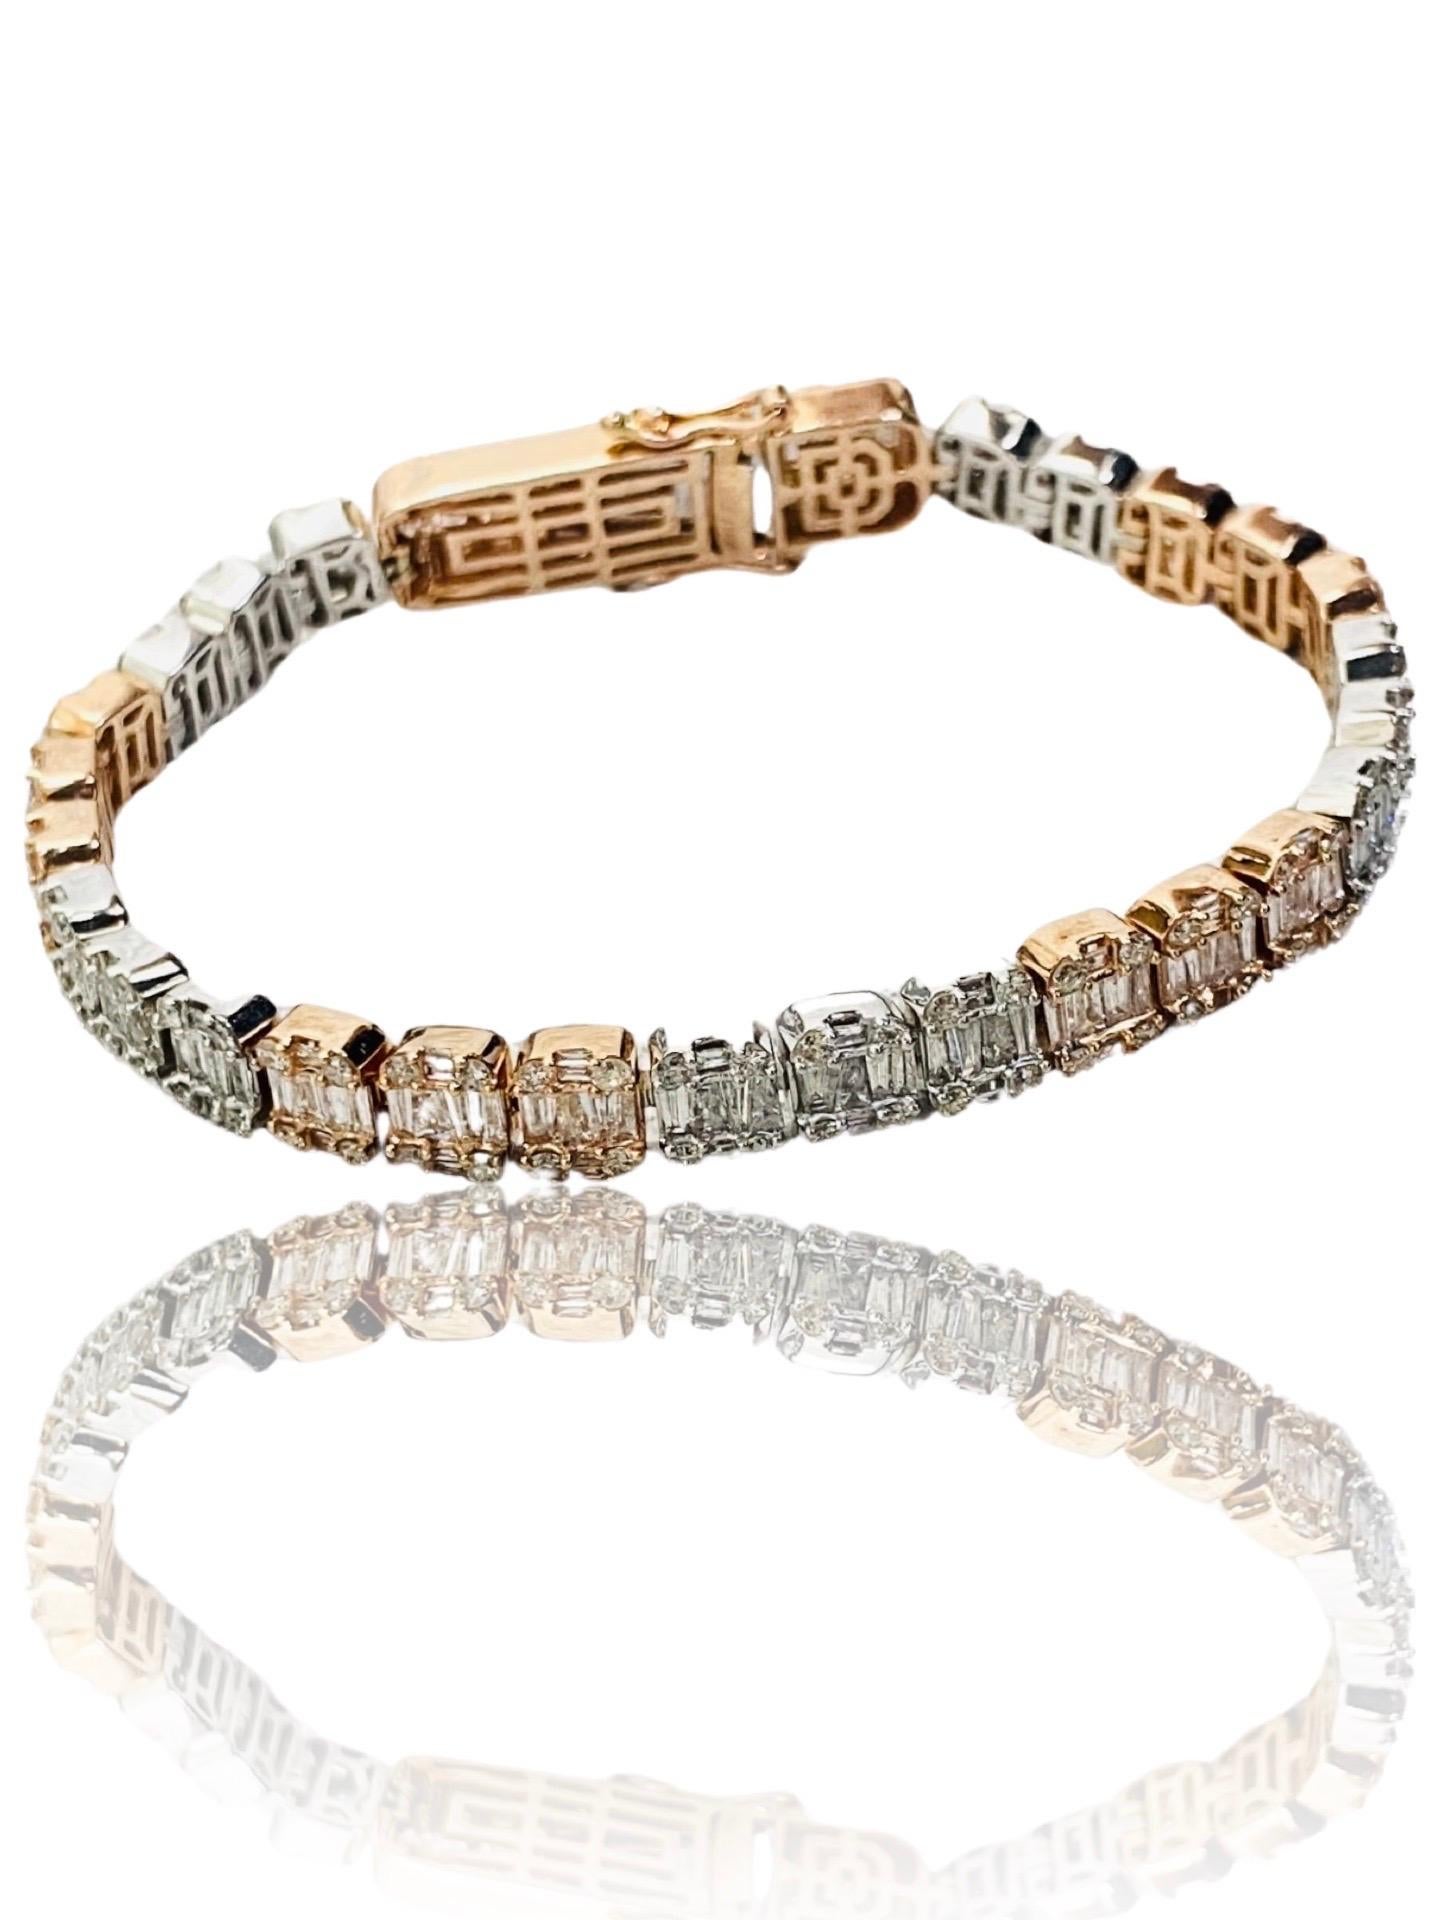 Bracelet en or bicolore de 9,50 carats de diamants Baguette et ronds. Bracelet de tennis très luxueux avec un scintillement massif. Le poids total des diamants est d'environ 6,50 carats (selon la formule). Le bracelet mesure 6,75 mm de large et 7